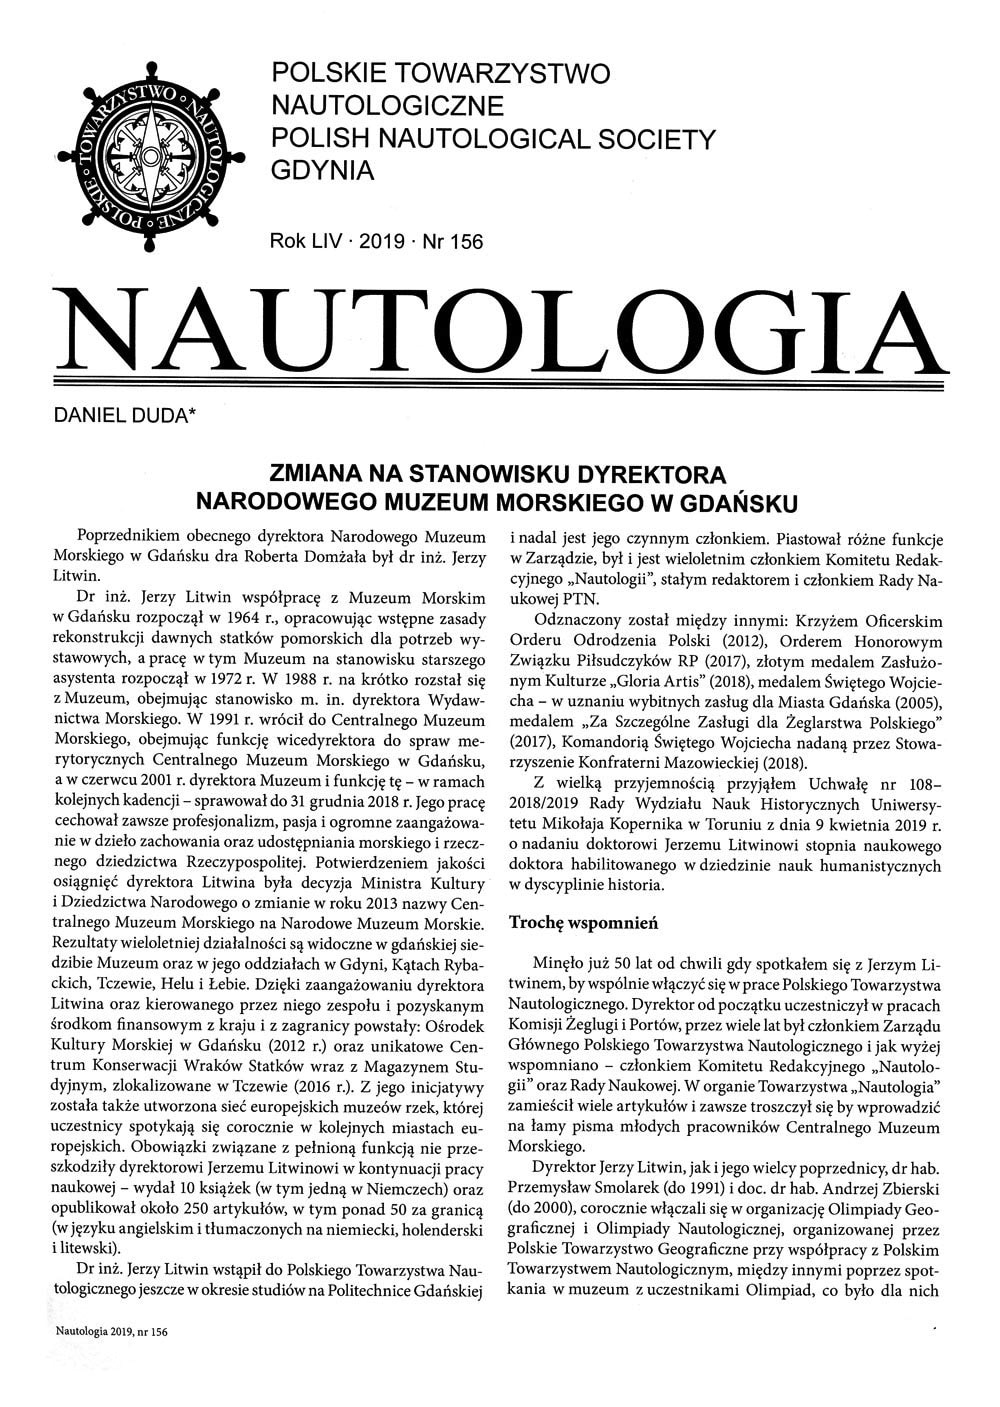 Nautologia